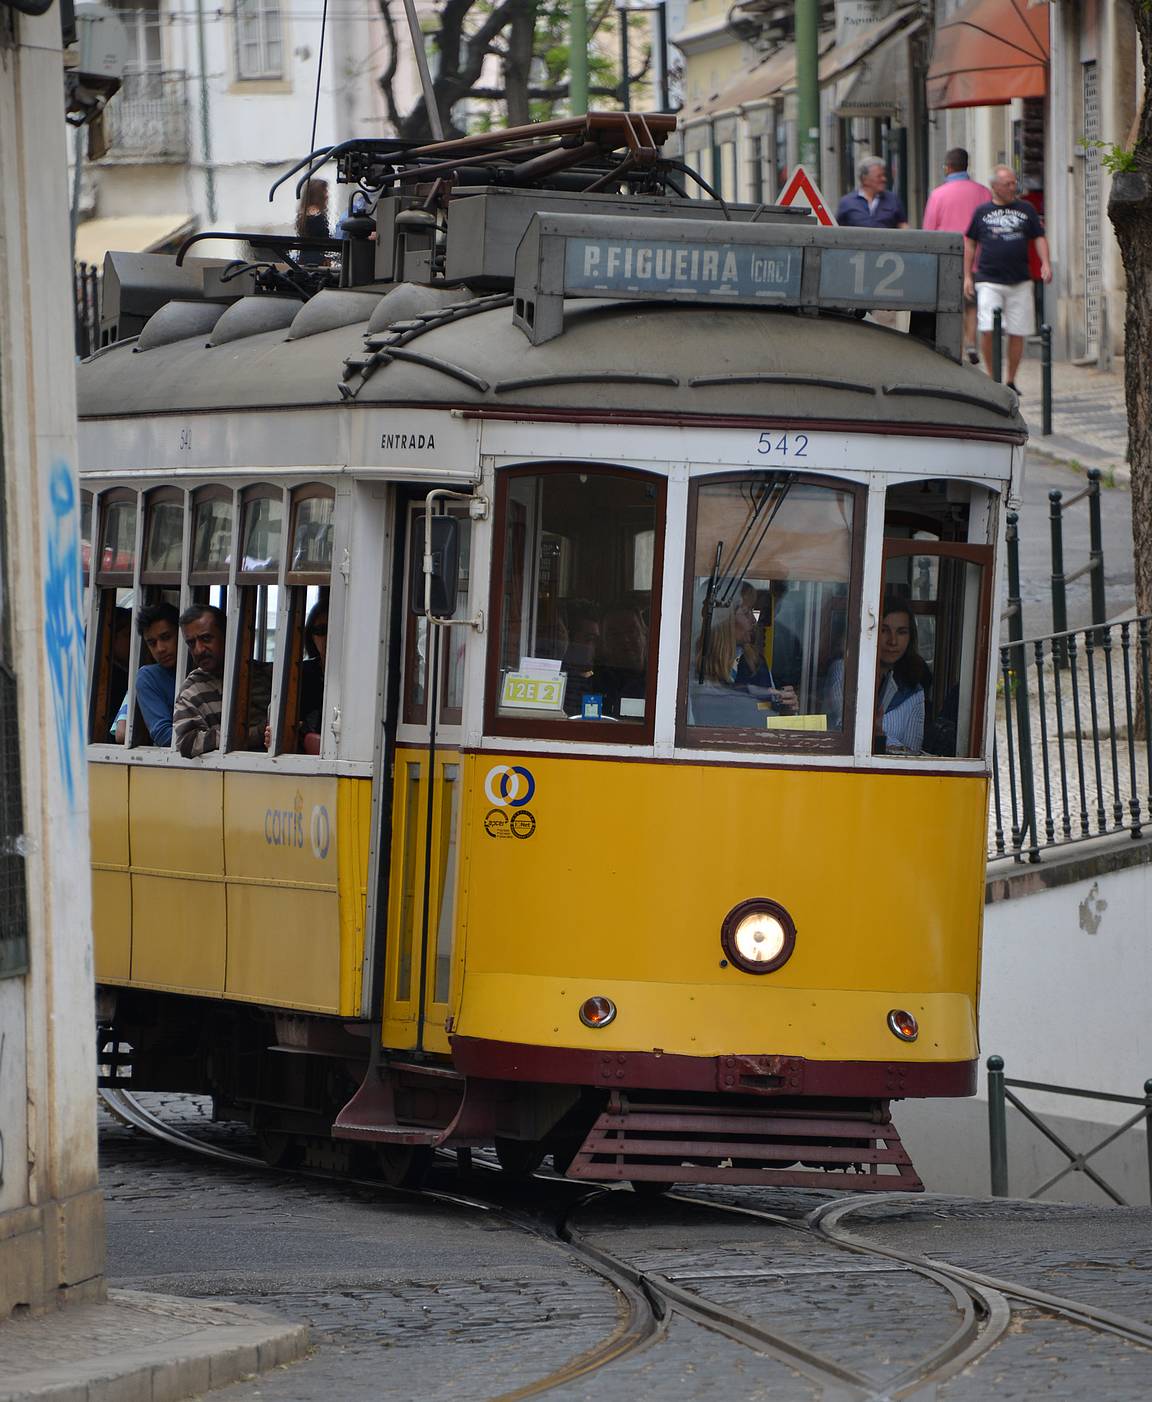 Siinä missä Lissabonissa kiehtoi ratikat, Portossa kiehtoisi Dourojoen laakson viljelmät.